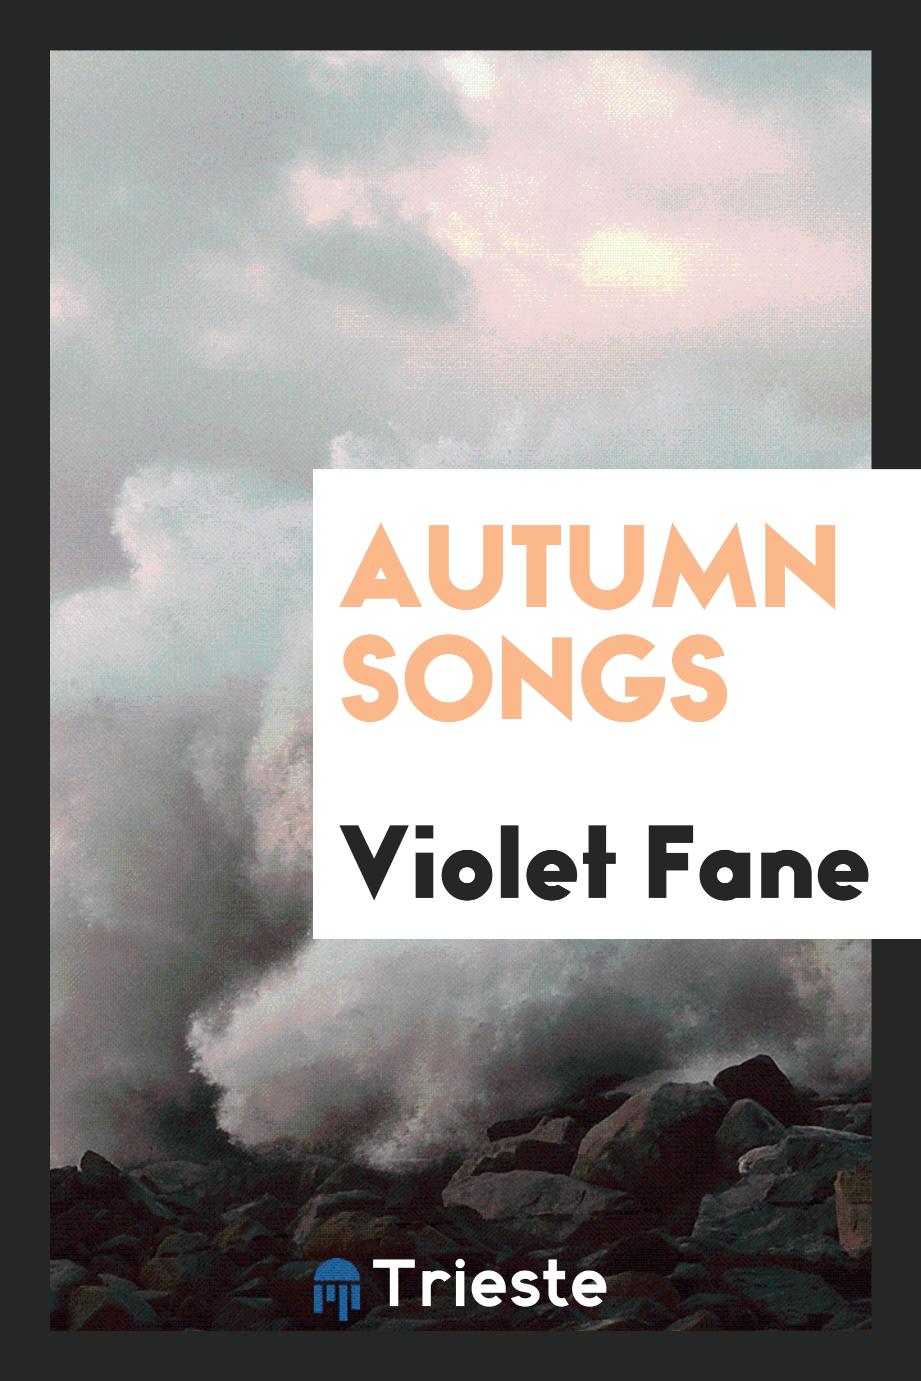 Autumn Songs